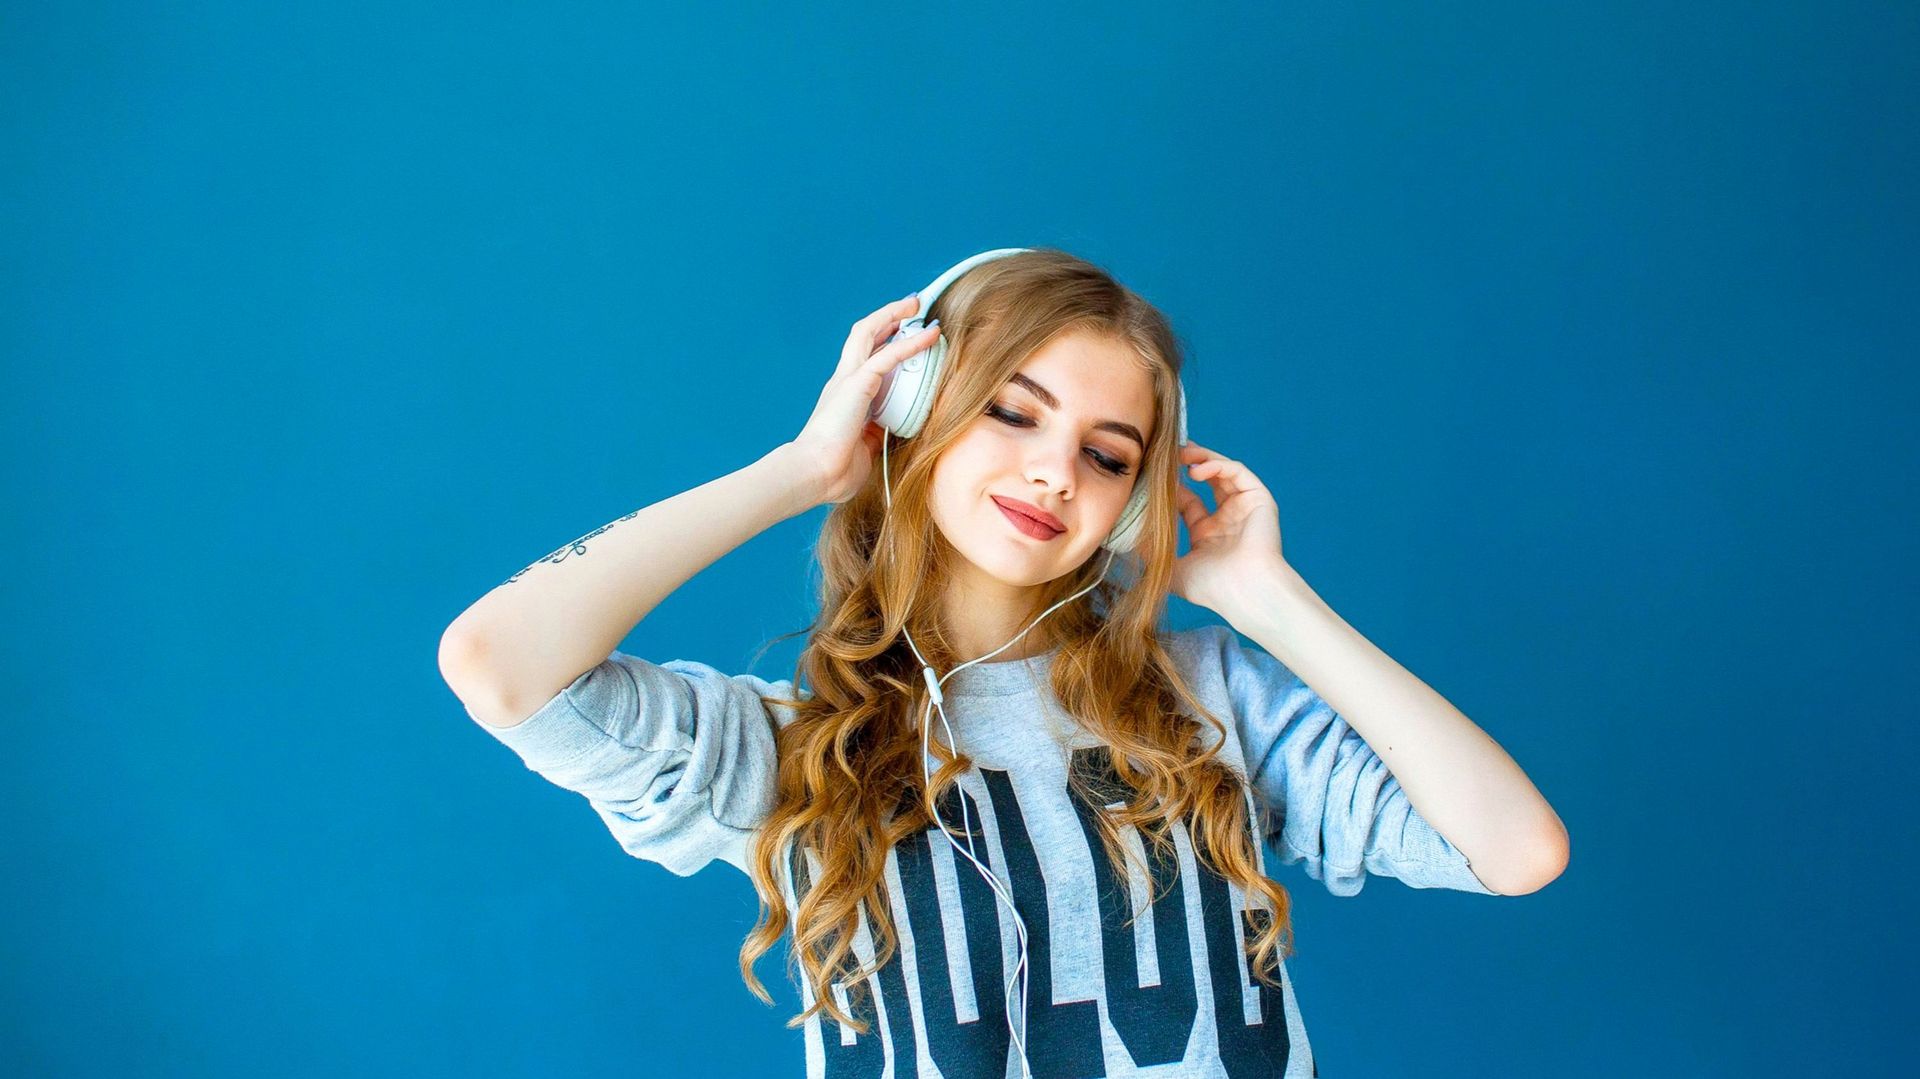 Une étude britannique préconise d'écouter 78 minutes de musique par jour pour éprouver du bien-être